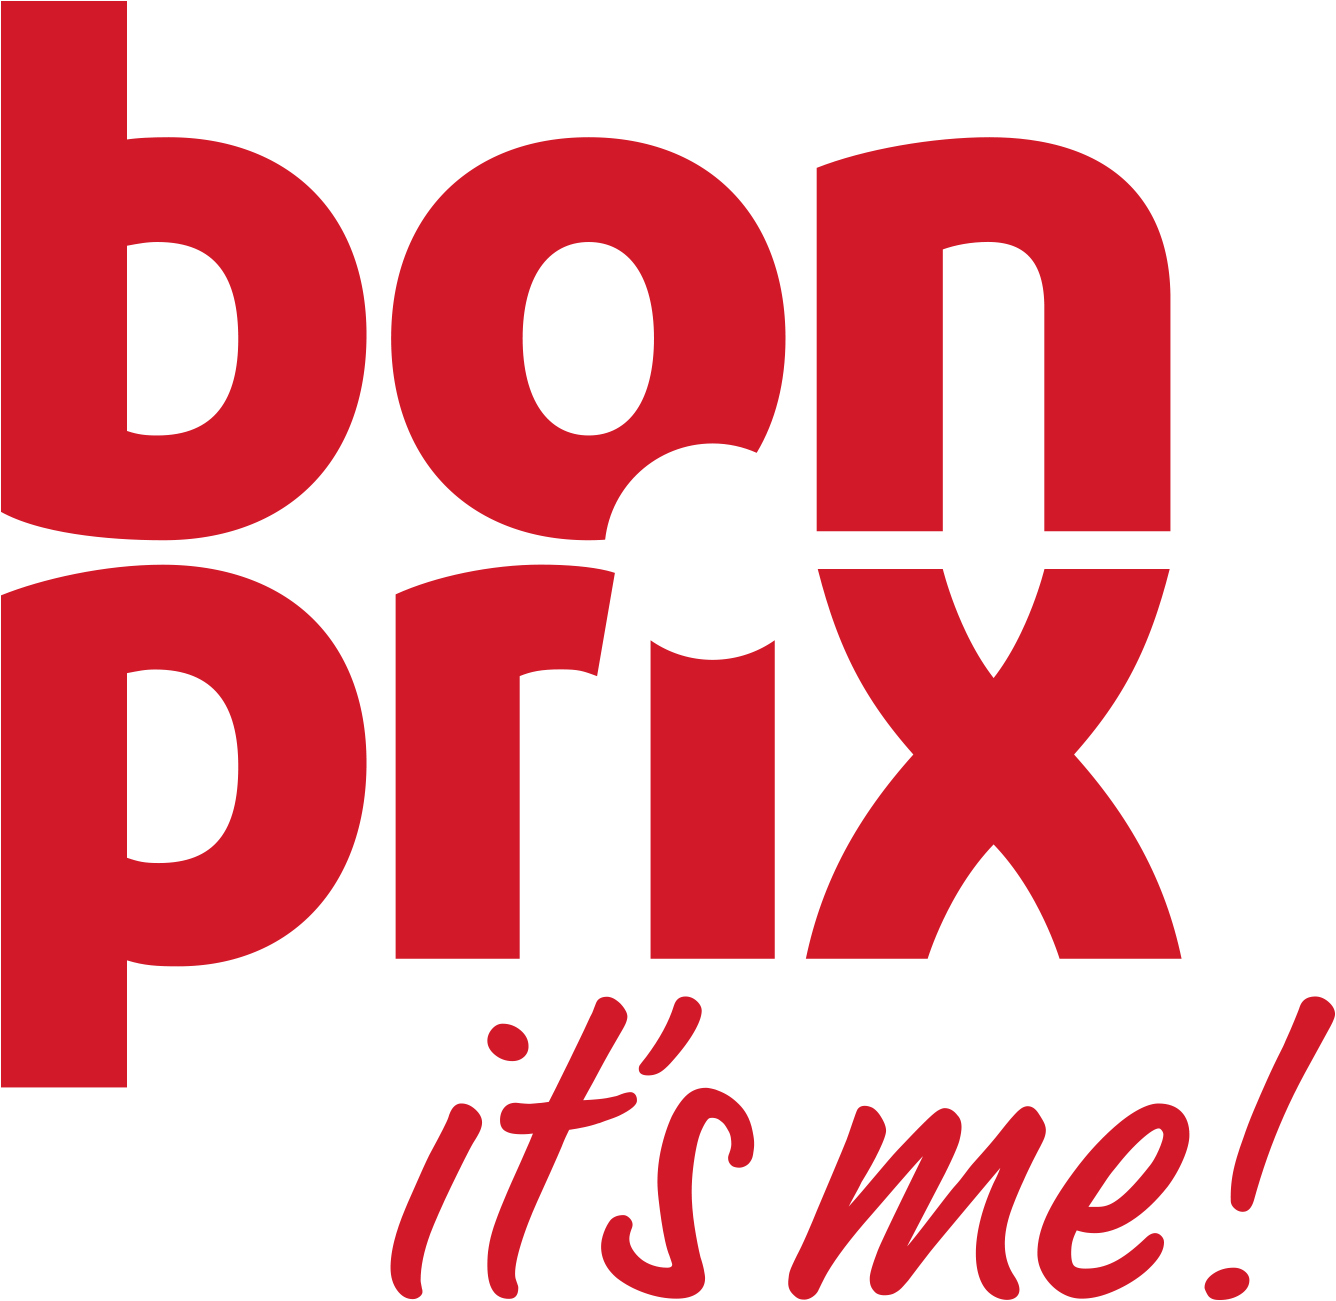 bonprix vertraut auf oddity - Logo: bonprix